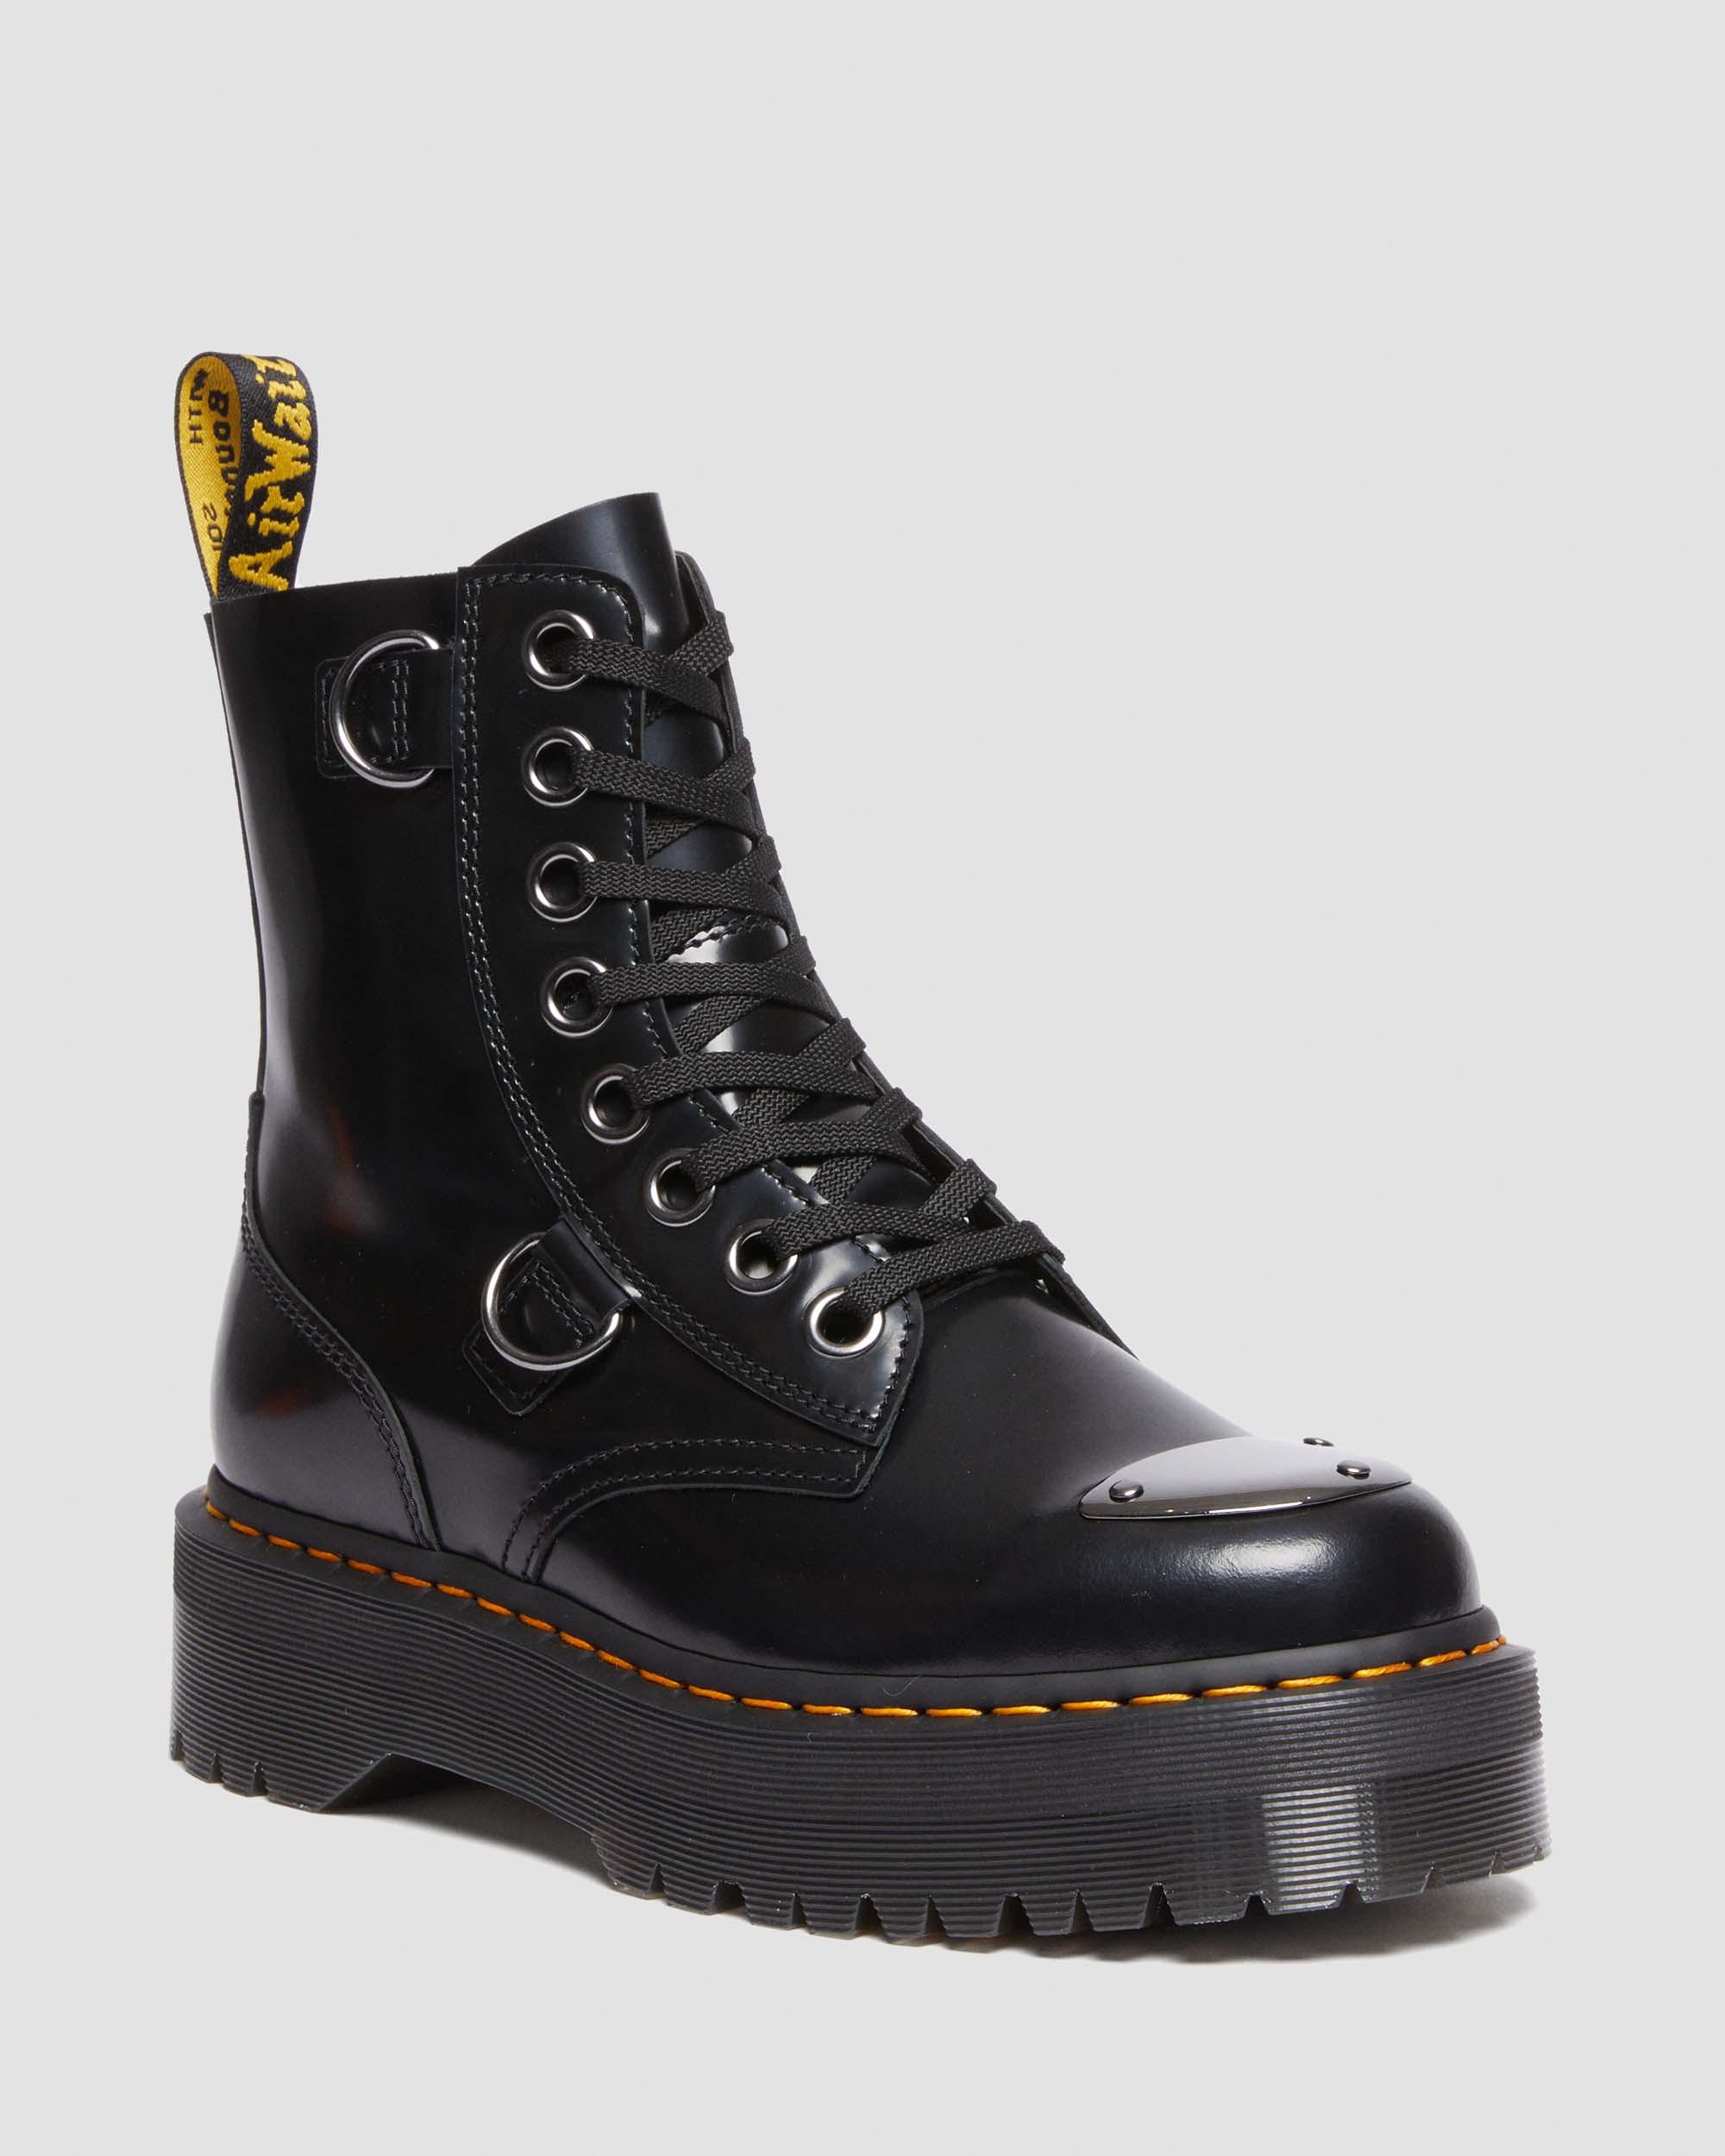 Jadon Boot Toe Guard Leather Platforms in Black | Dr. Martens